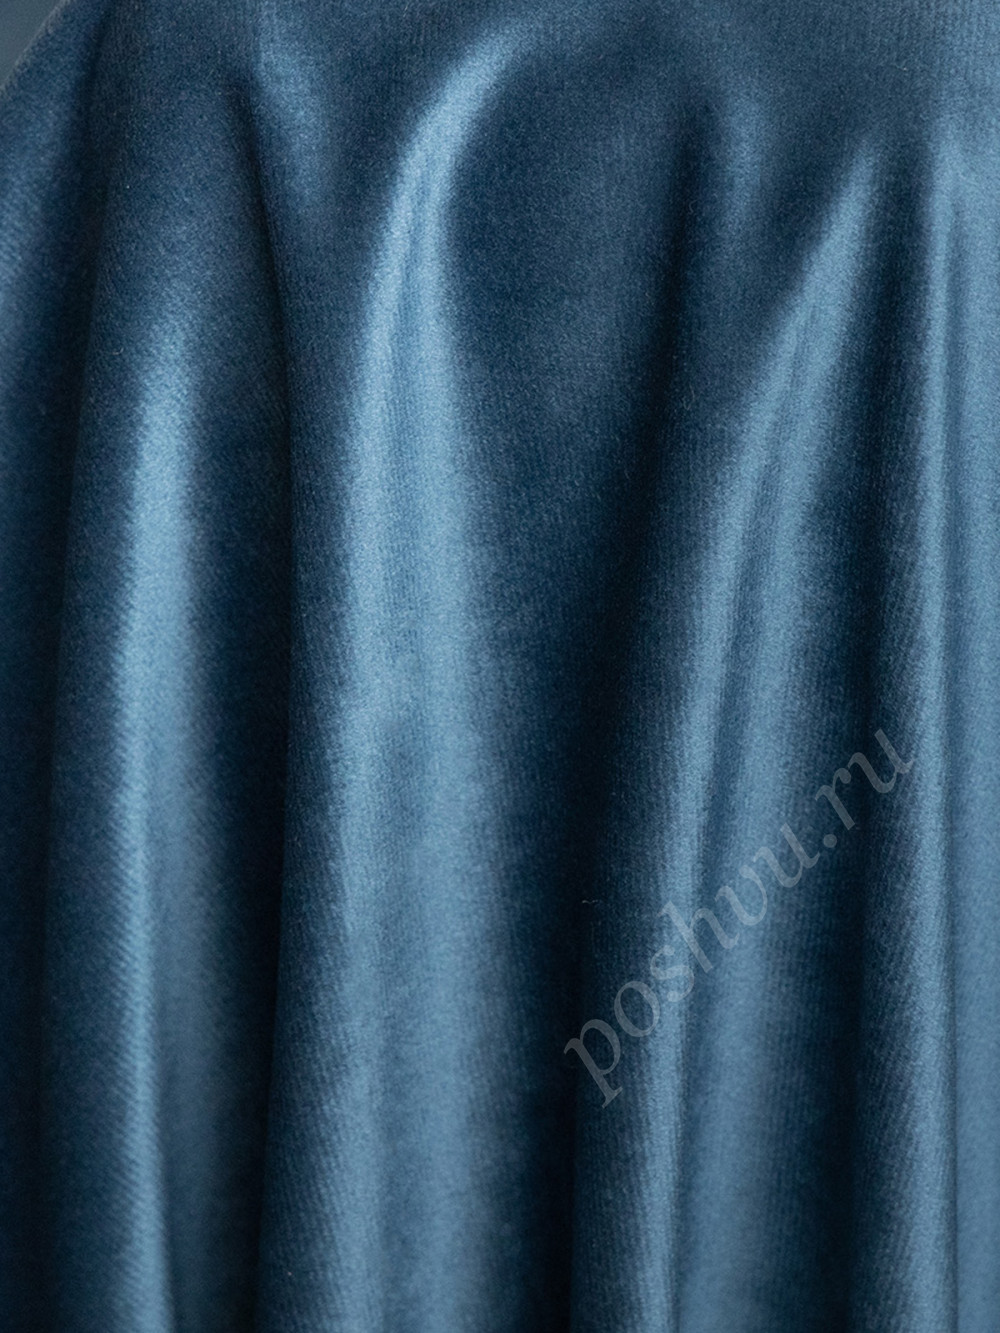 Ткань портьерная велюр MONACO синего цвета